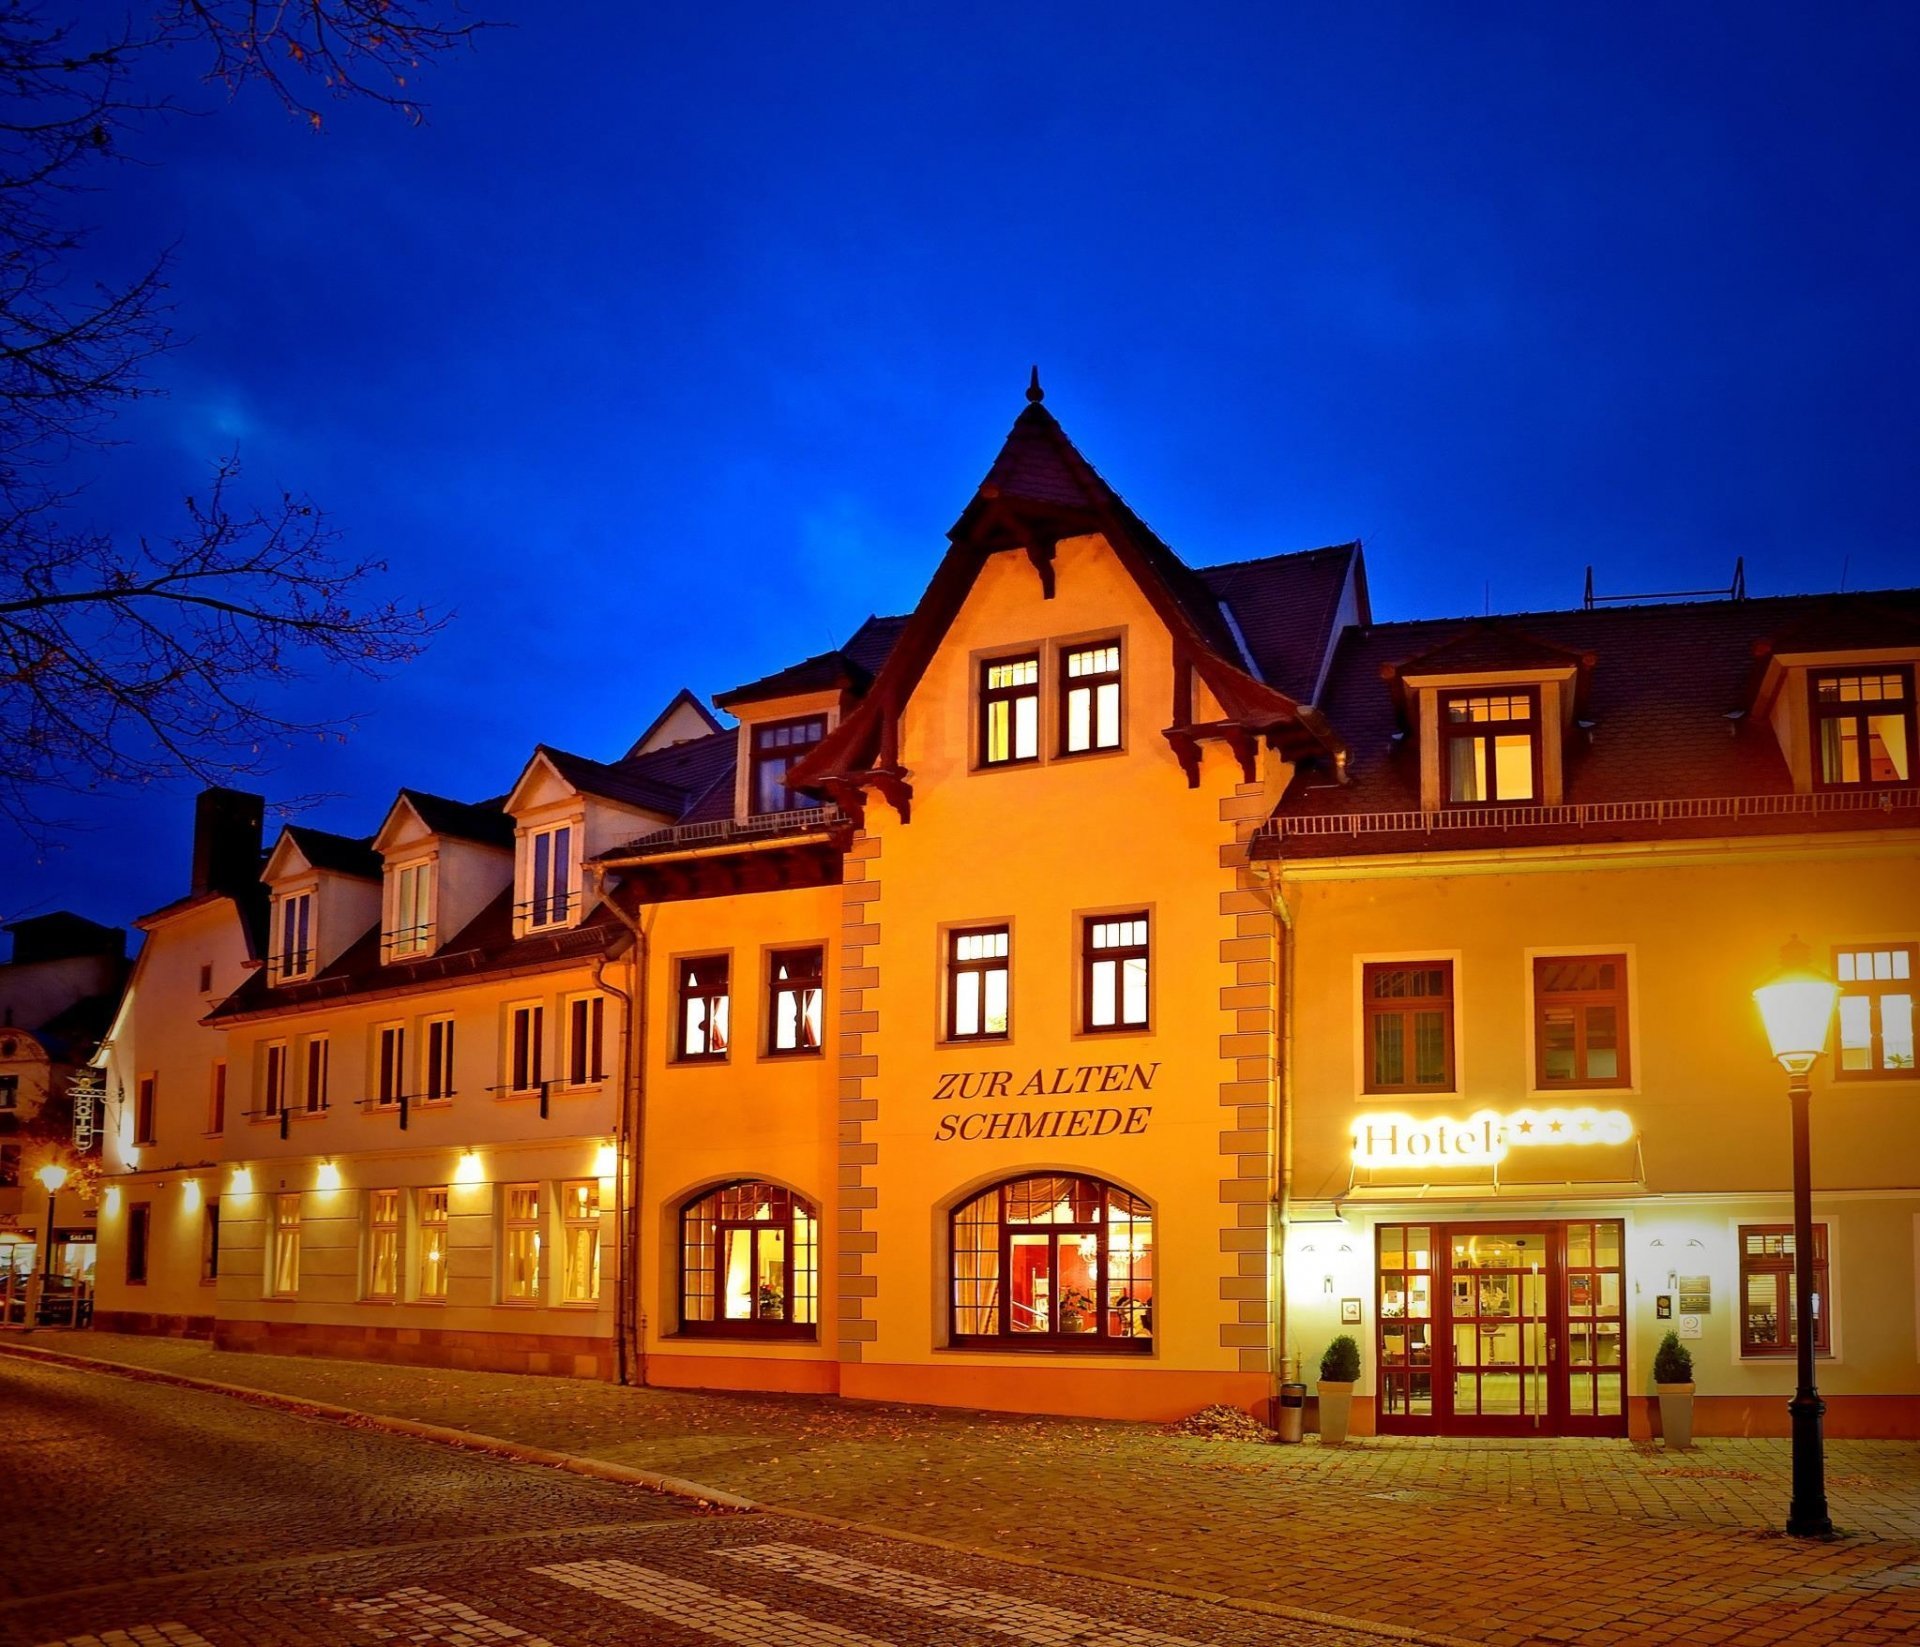 3 Tage Aktiv SPEZIAL – Hotel Zur Alten Schmiede (4 Sterne) in Naumburg, Sachsen-Anhalt inkl. Halbpension